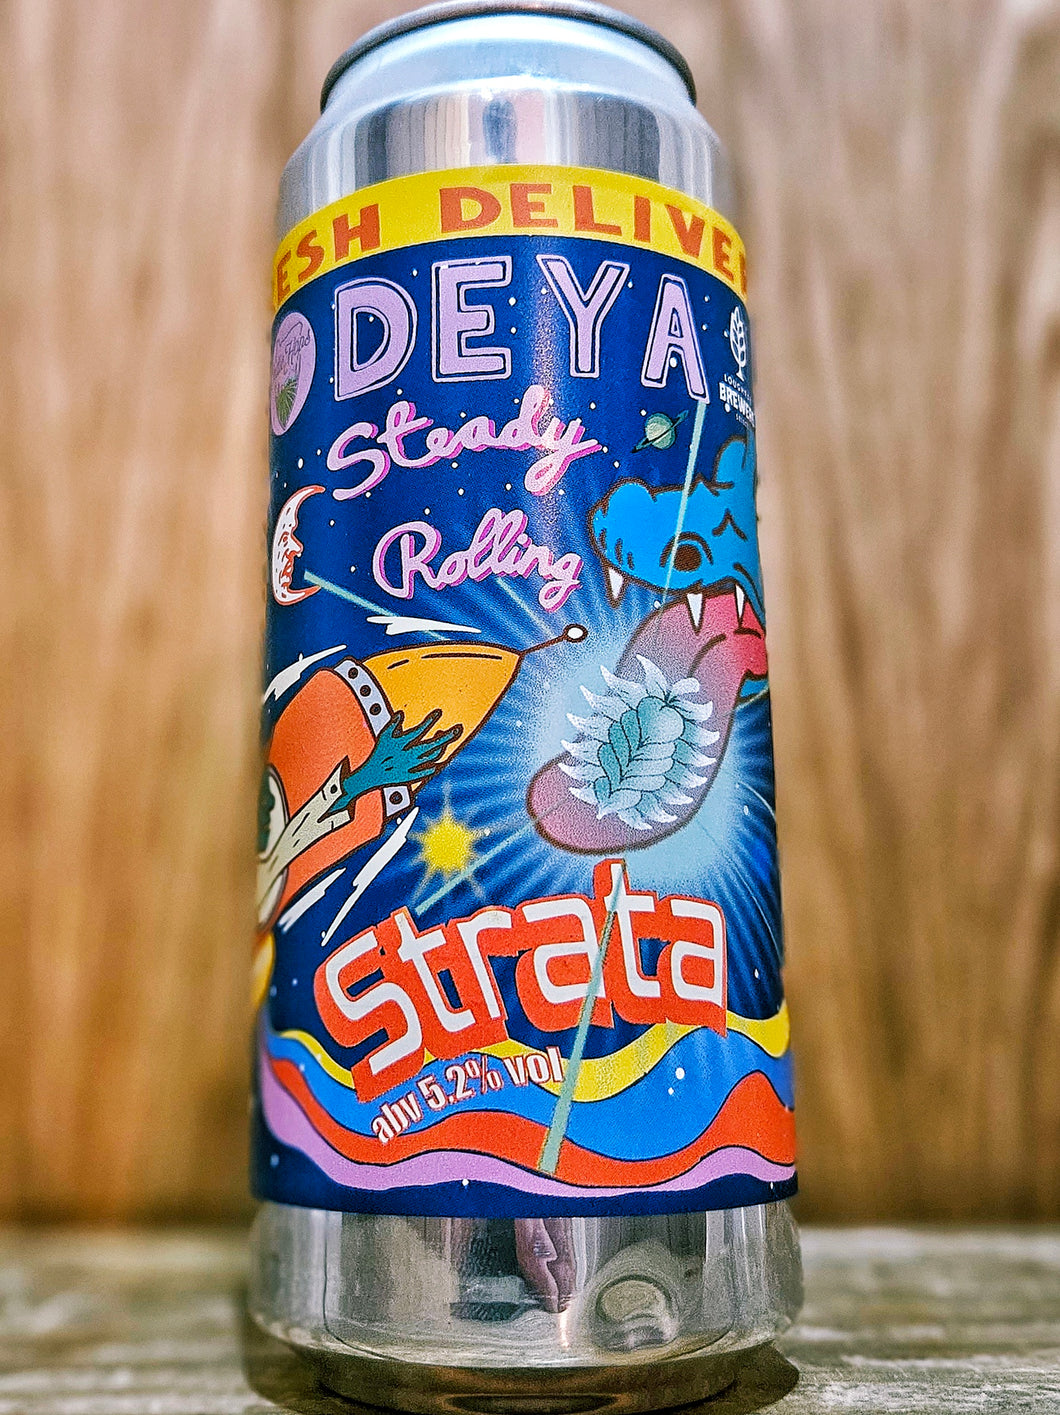 DEYA - Steady Rolling Strata